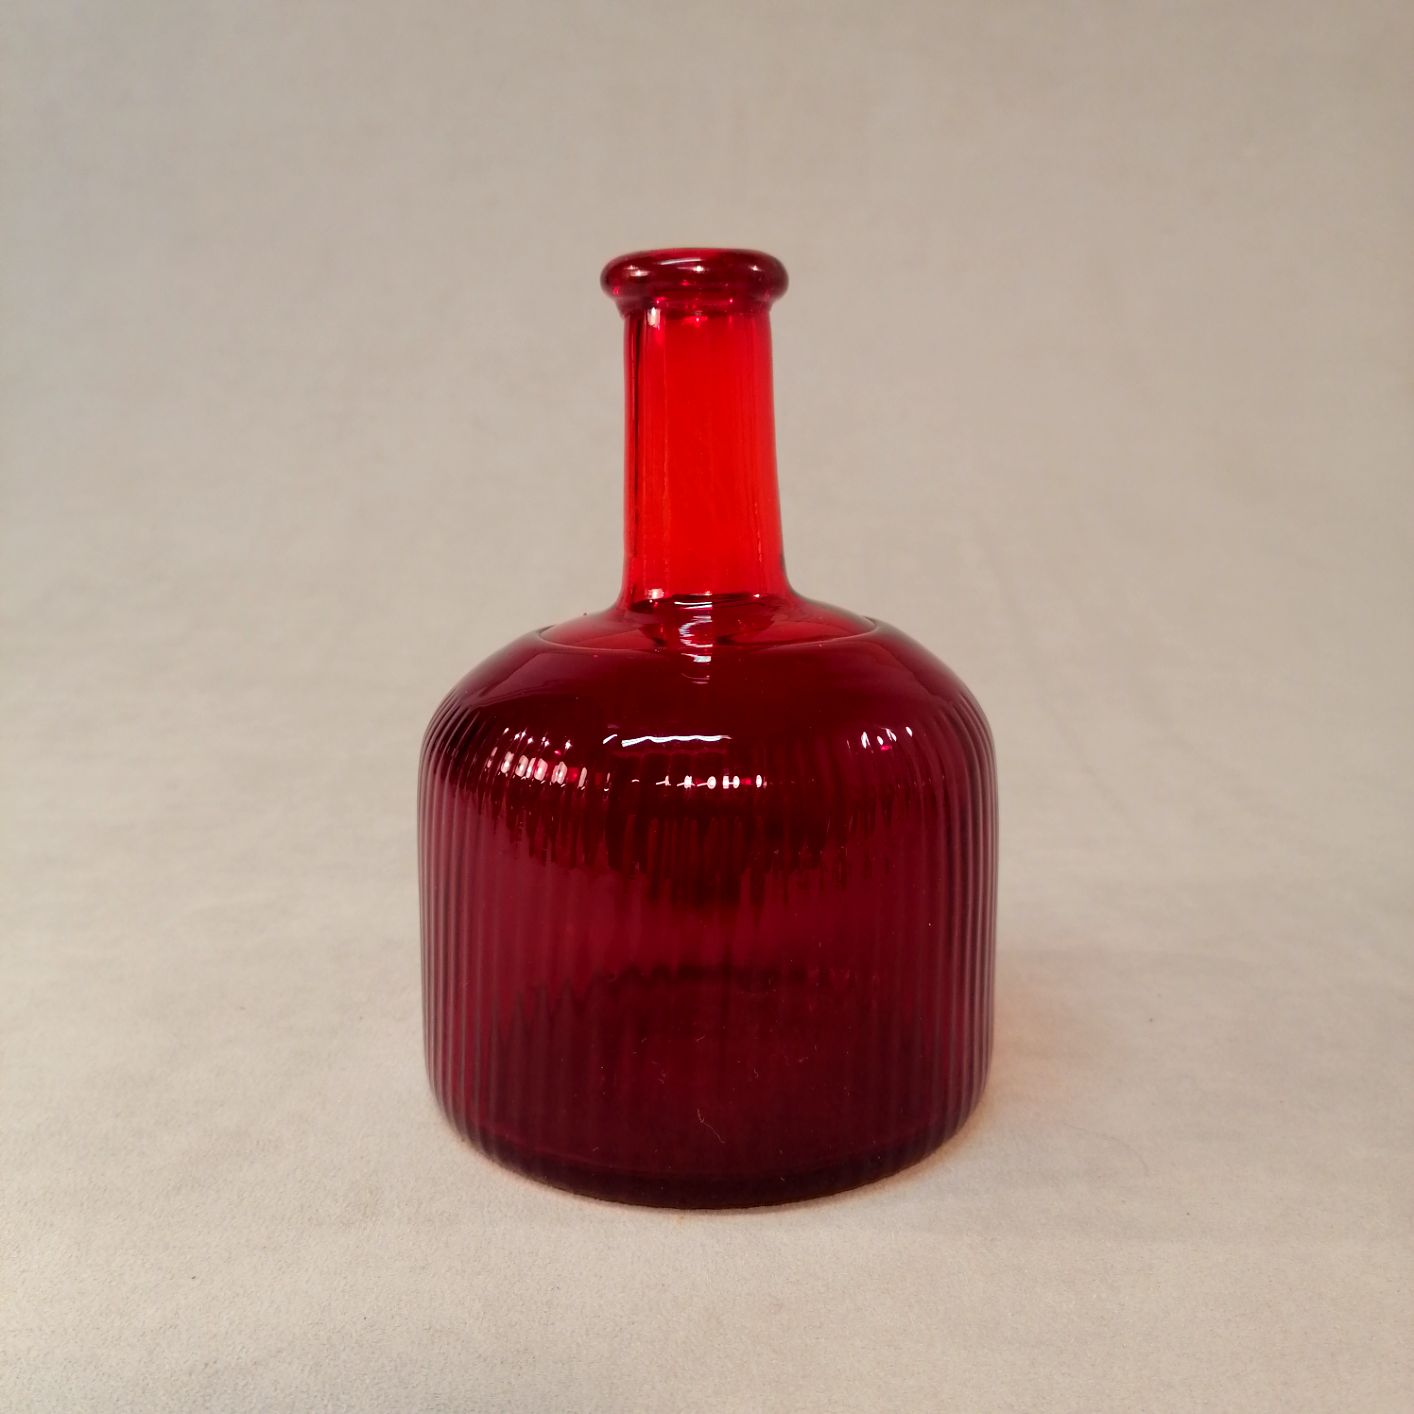 Riihimäen Lasi punainen pullo harvinaisella kohoraidoituksella kork 17cm halk 11,5cm hinta 165euroa.